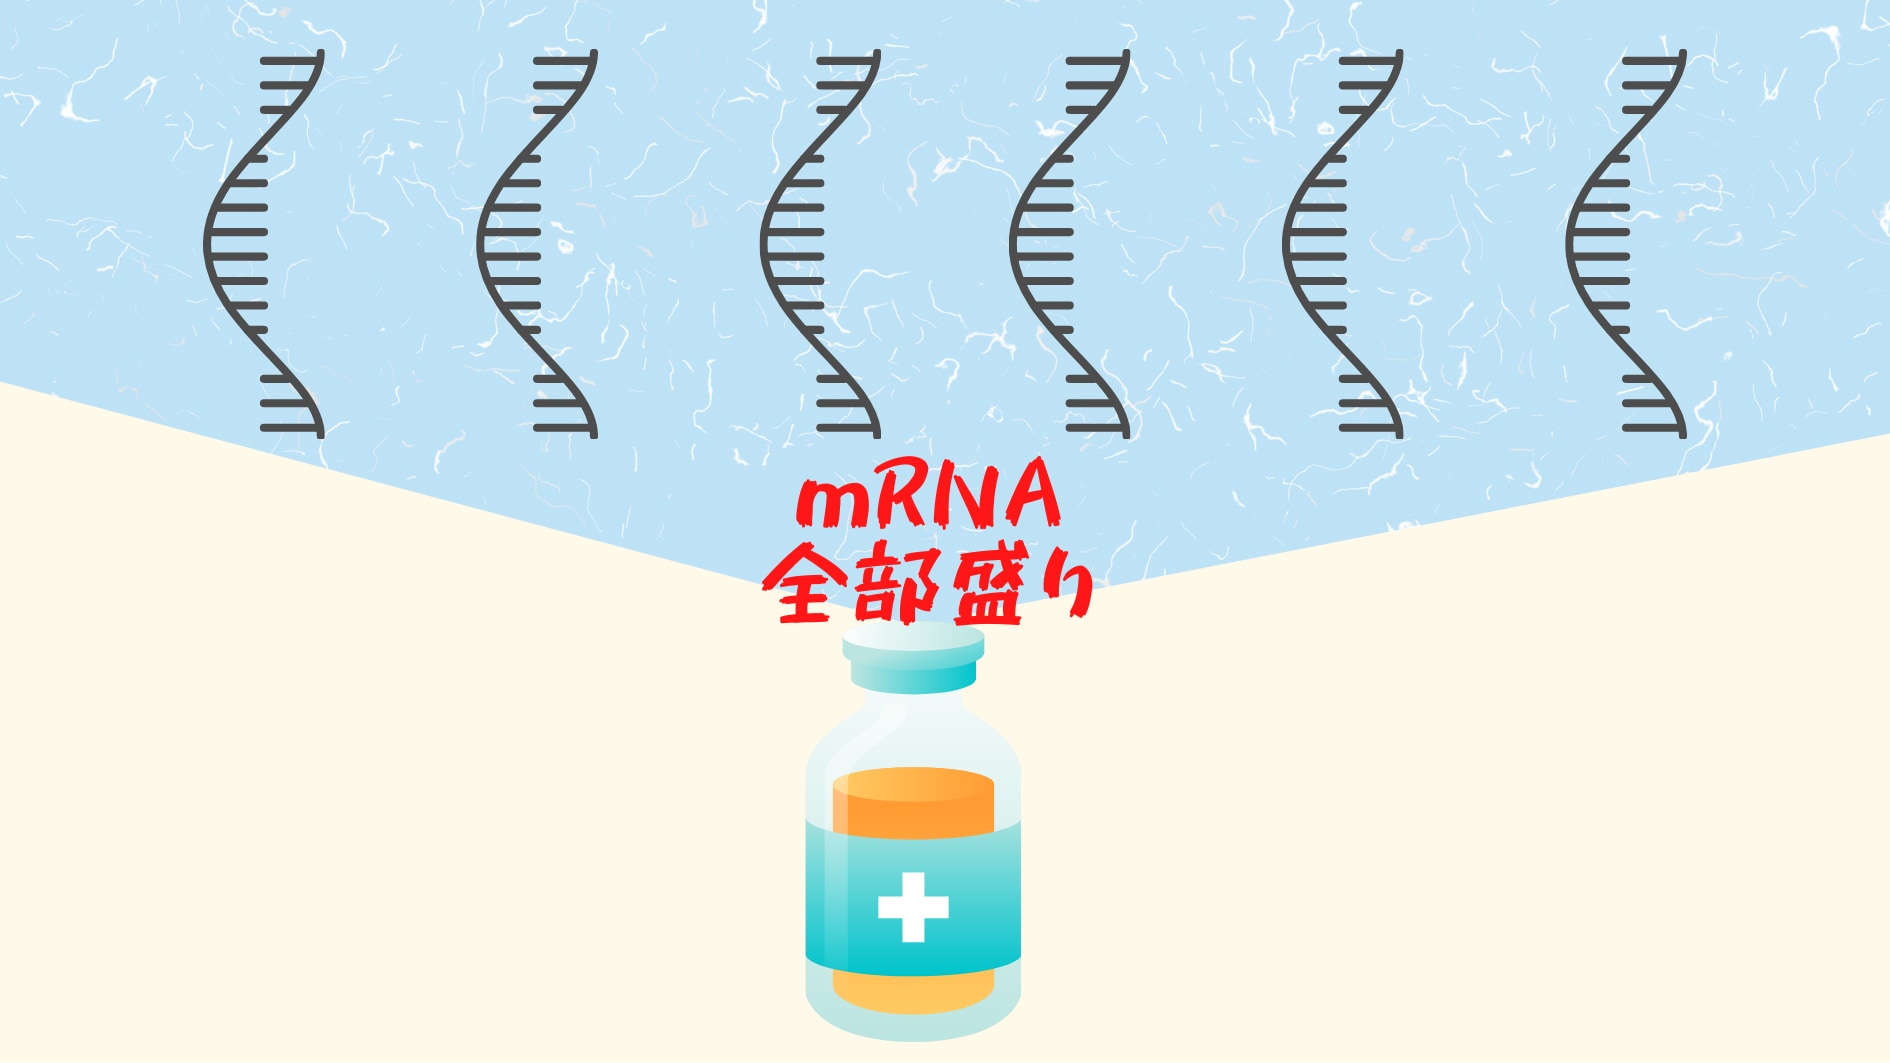 キメラワクチンはmRNAのメガ盛りで効果を発揮する